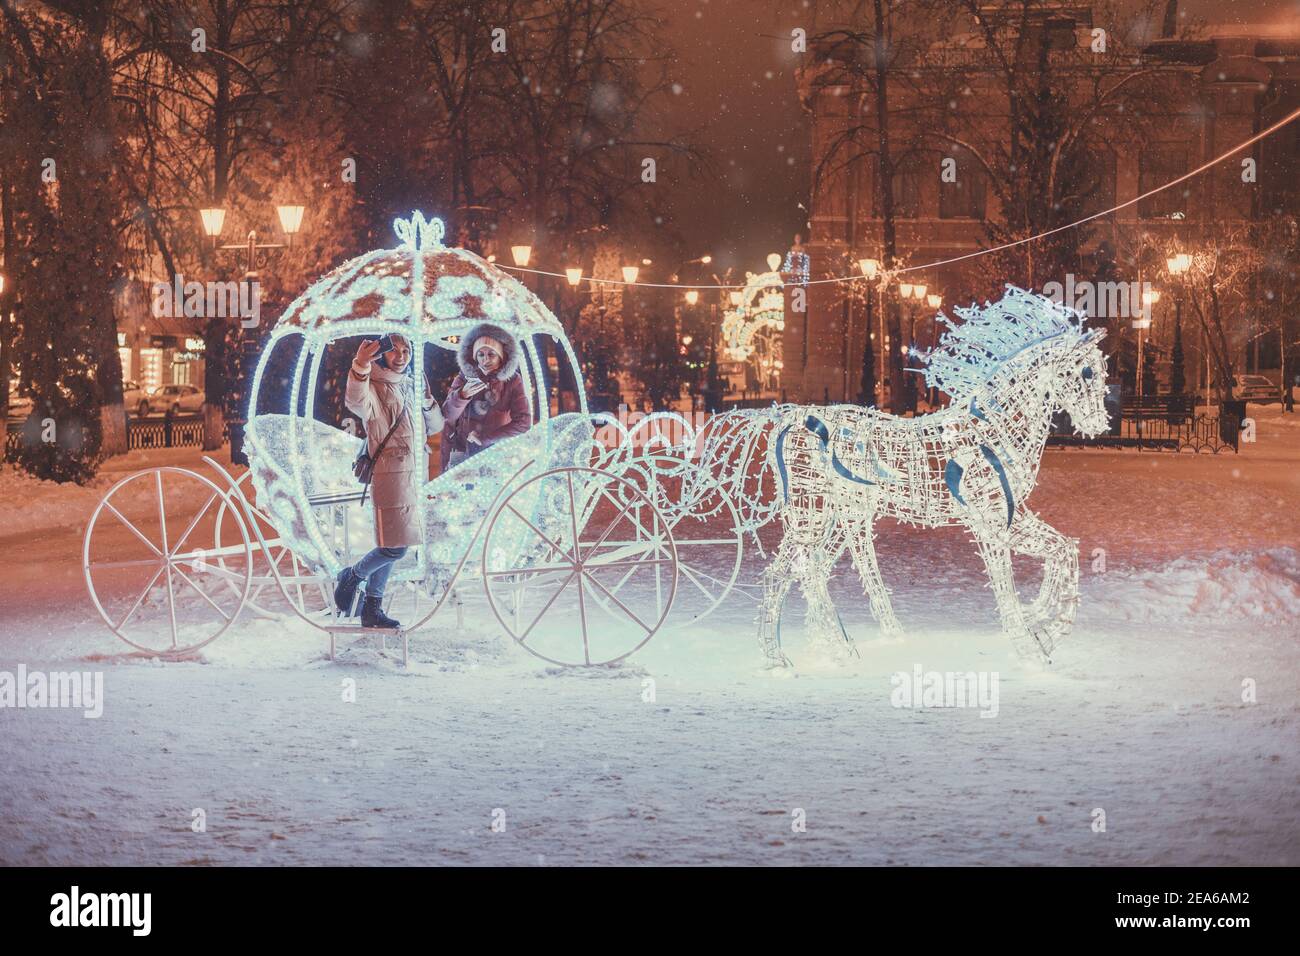 Filles amis s'amusant dans le chariot de conte de fées illuminé avec des chevaux décorés de lumières et de guirlandes pour la nuit de Noël et les vacances du nouvel an. FR Banque D'Images